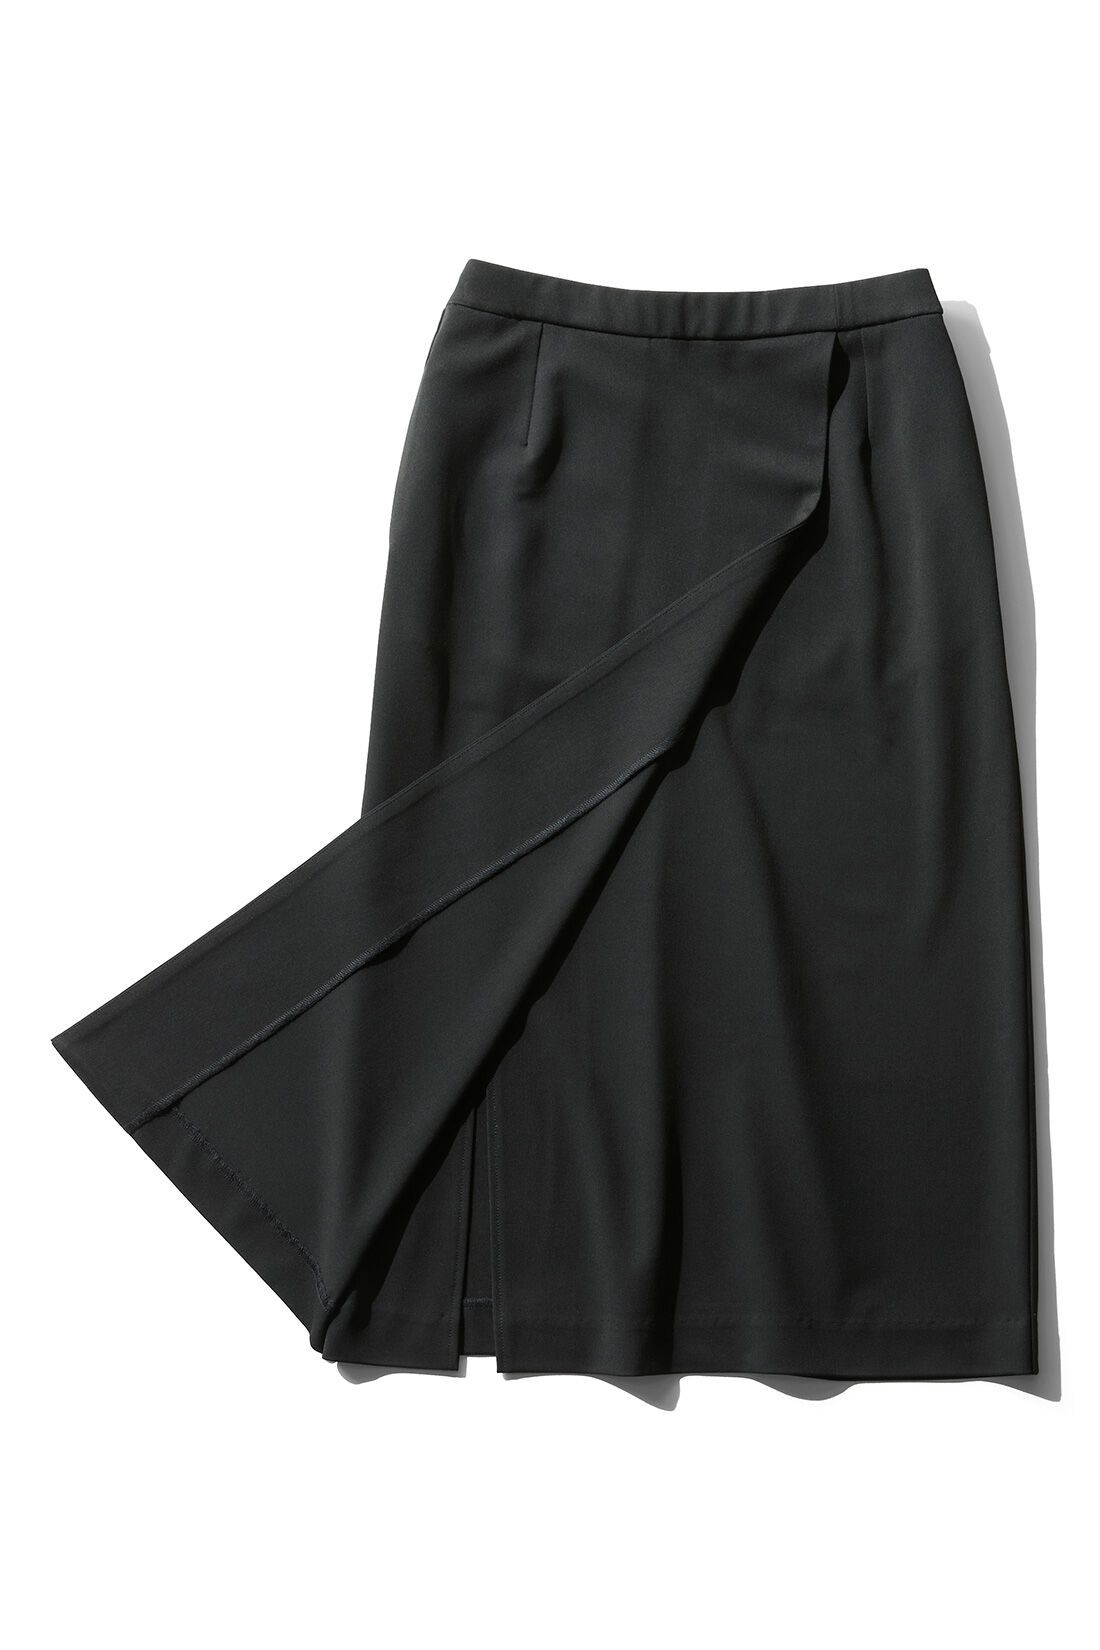 DRECO by IEDIT|【3～10日でお届け】IEDIT[イディット]　いつもキレイな黒が続く オンオフ万能純黒デザインスカート〈ブラック〉|ラップ風デザインの下は脚さばきのよいスリット入り。